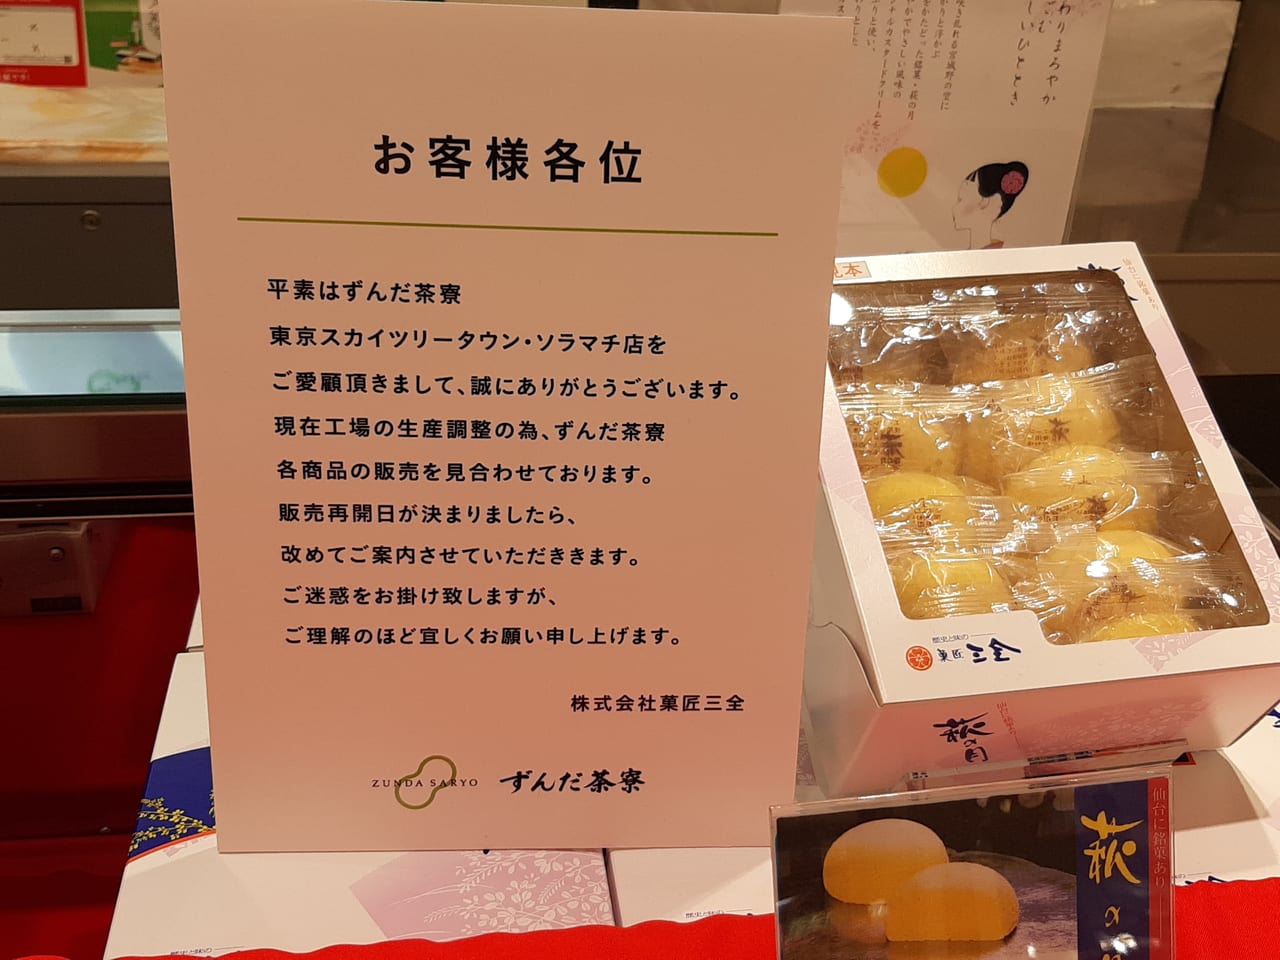 墨田区 ソラマチにて６月末までの期間限定で もらって嬉しいお土産ランキング で有名なあの銘菓が販売中です 号外net 墨田区